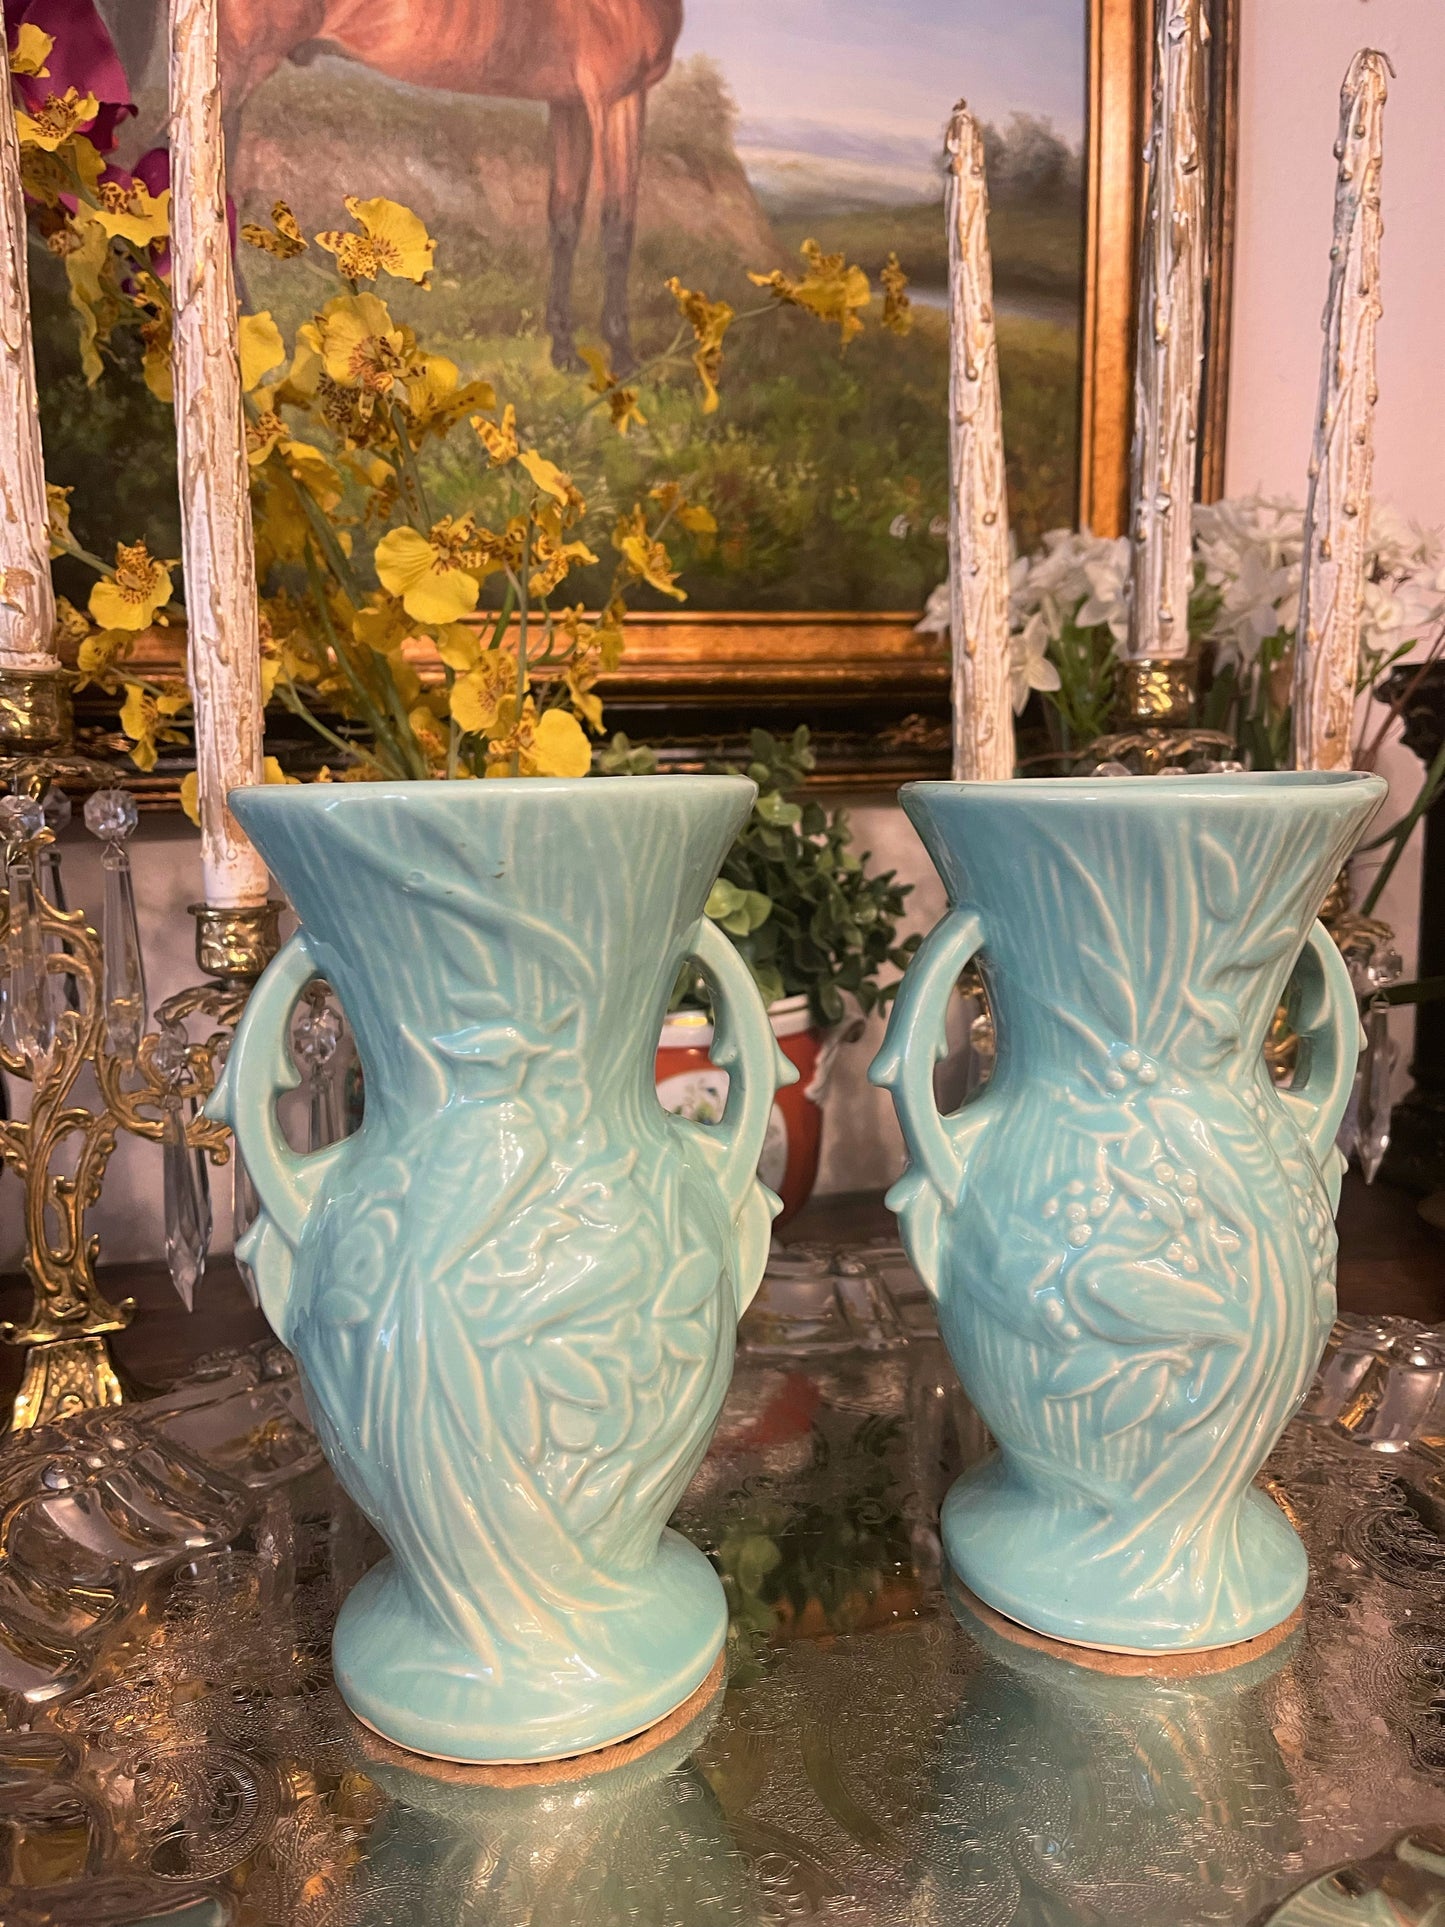 McCoy Bird of Paradise Vases, Pair, Vintage Peacock Vases